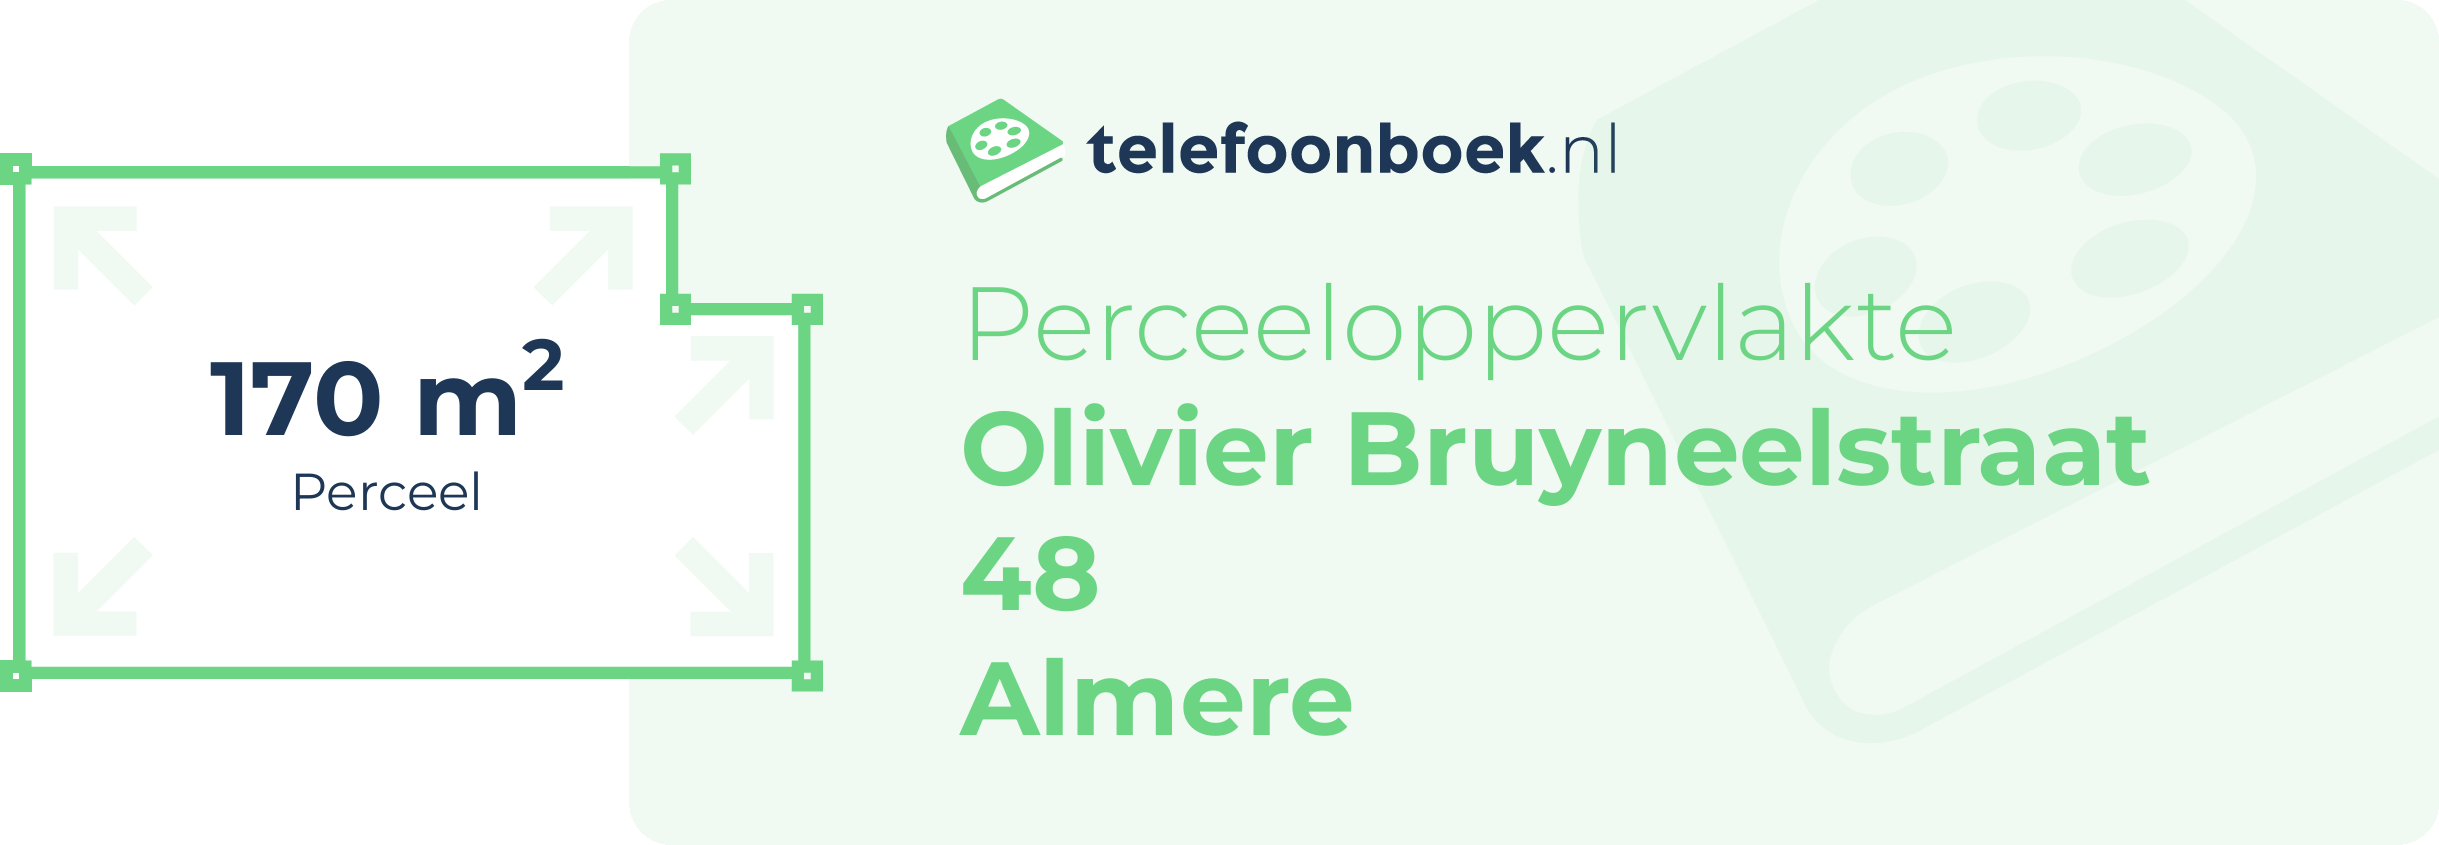 Perceeloppervlakte Olivier Bruyneelstraat 48 Almere